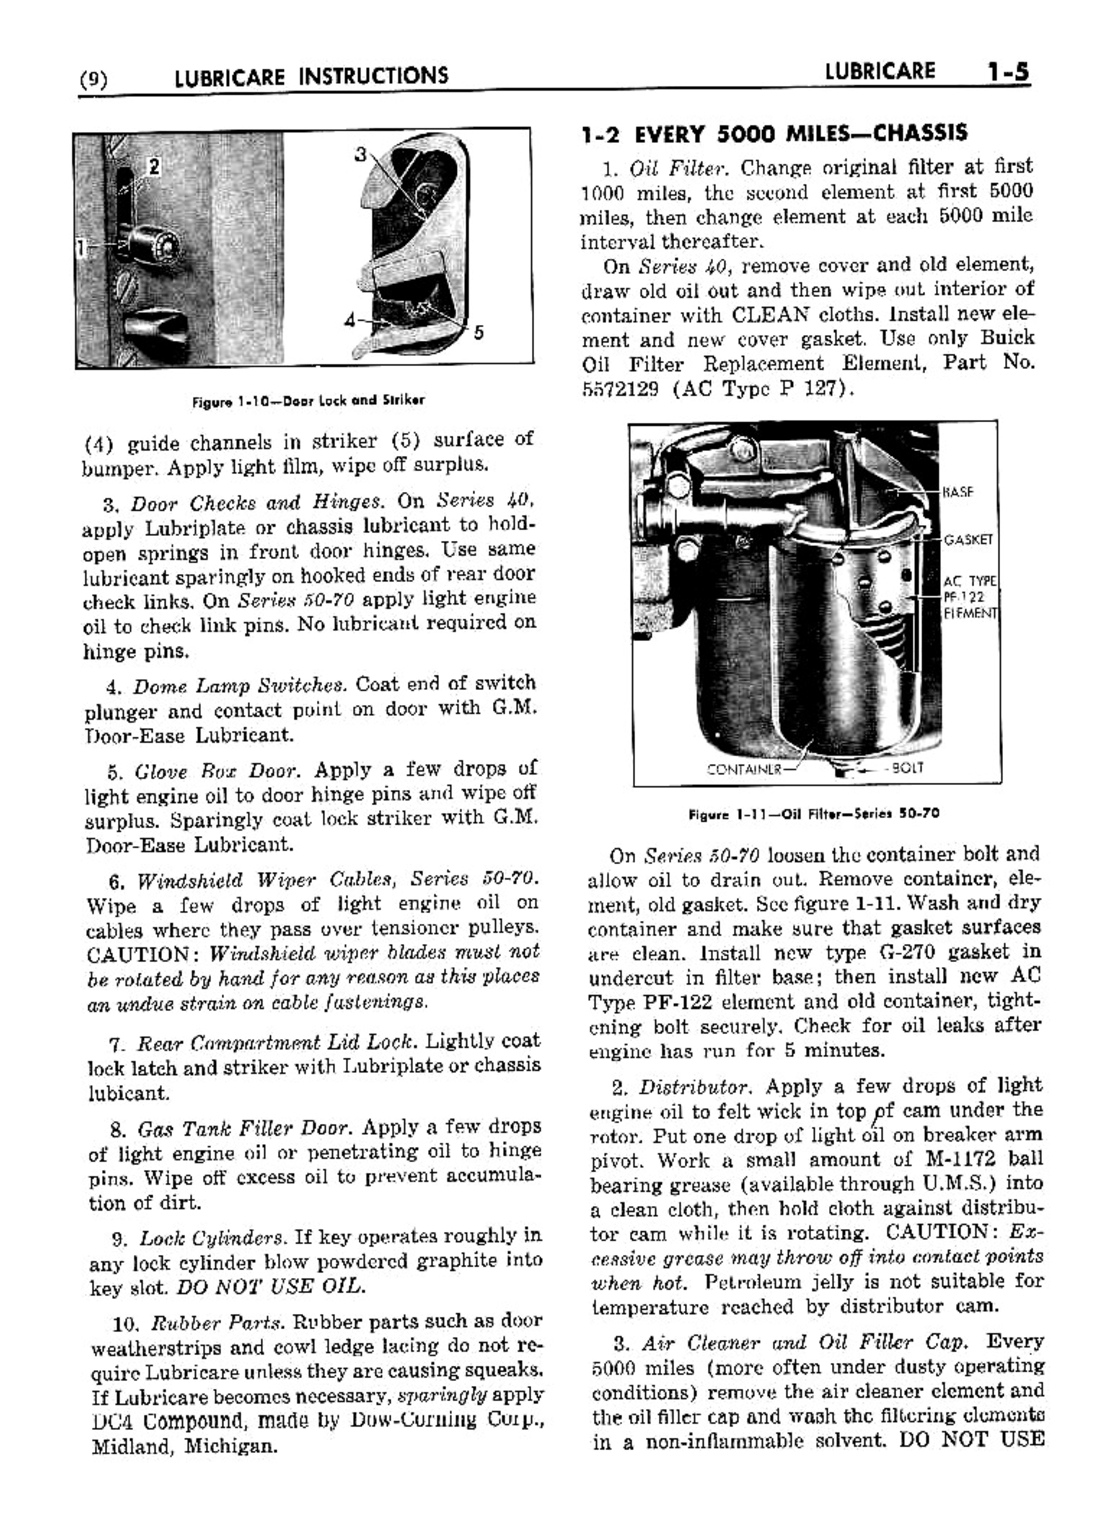 n_02 1953 Buick Shop Manual - Lubricare-005-005.jpg